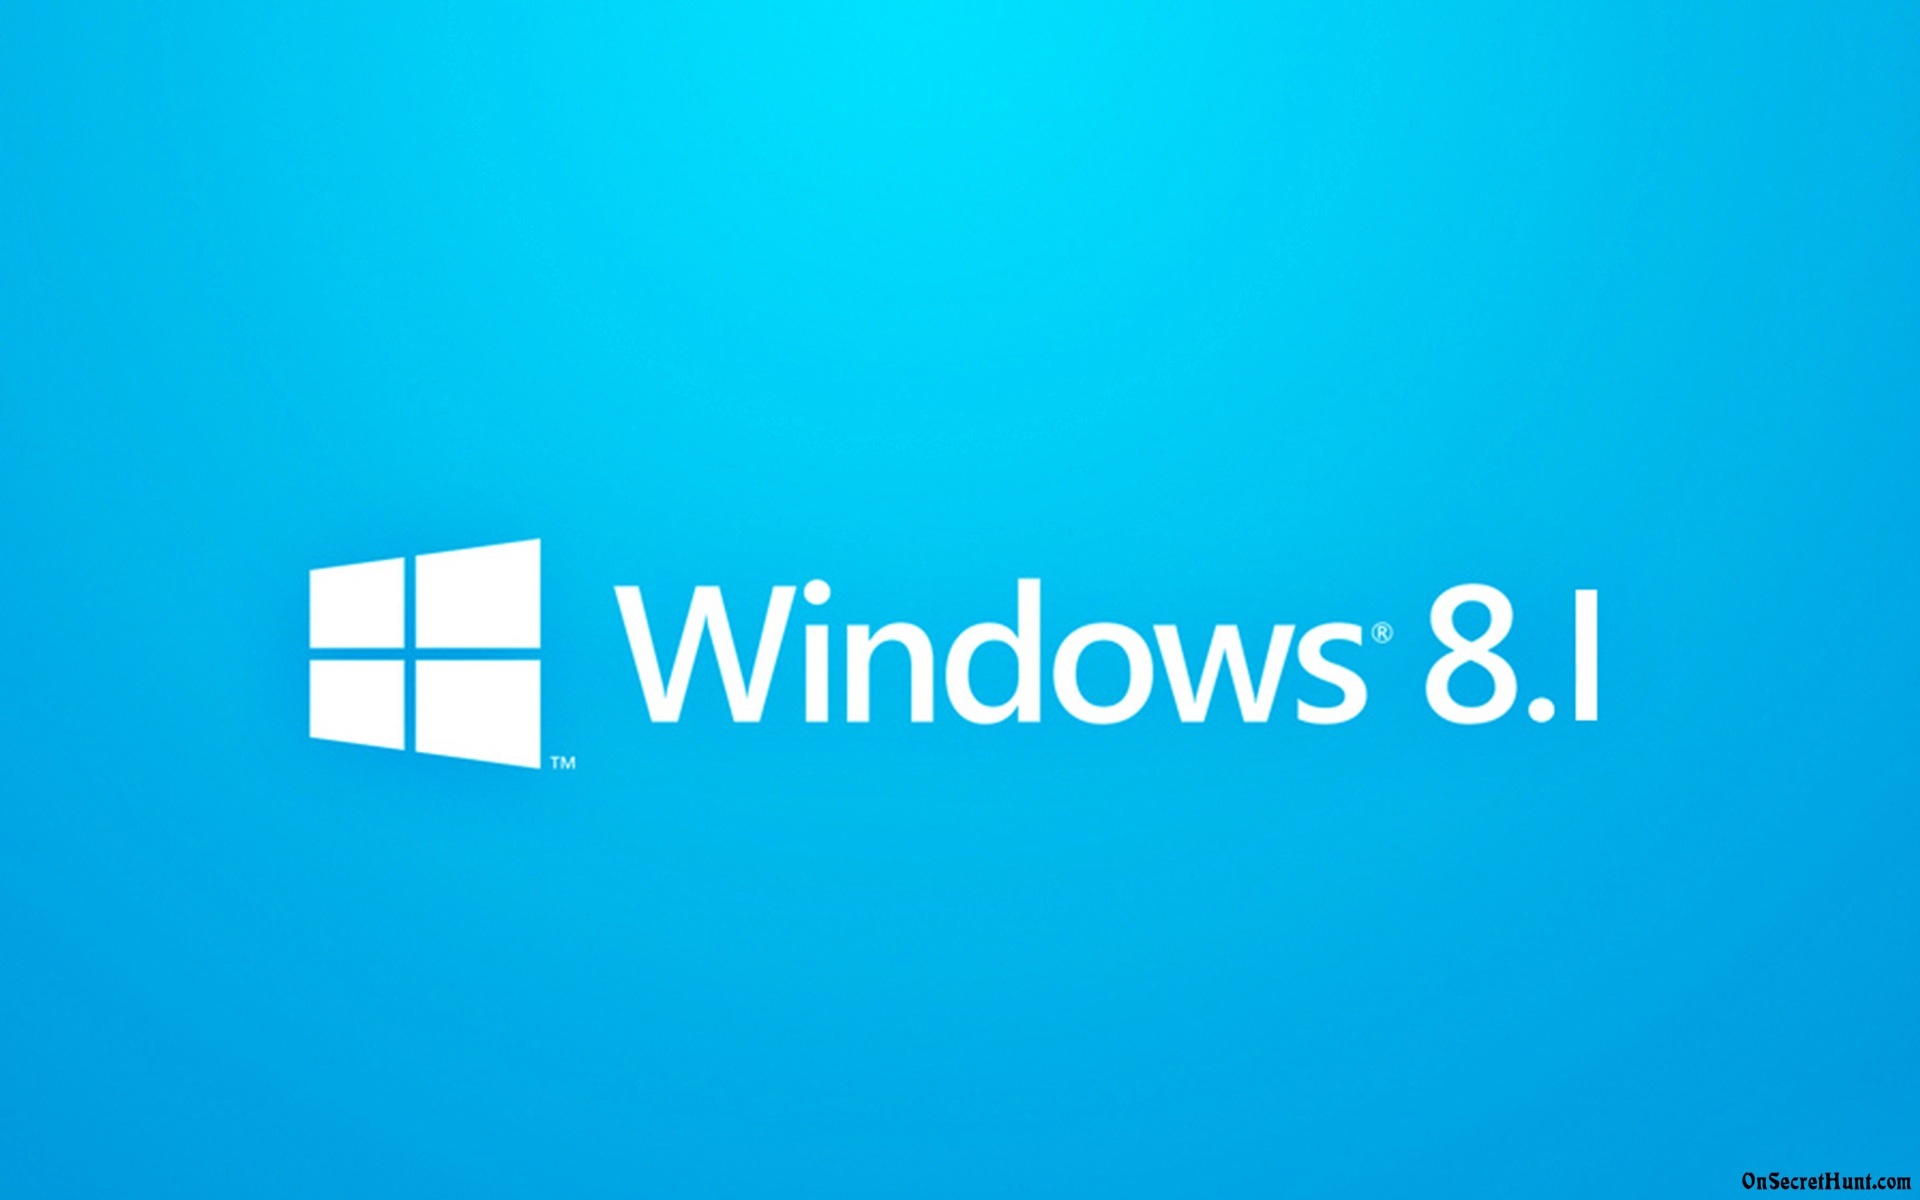 Microsoft 在2013年10月17日发布了Windows 8.1